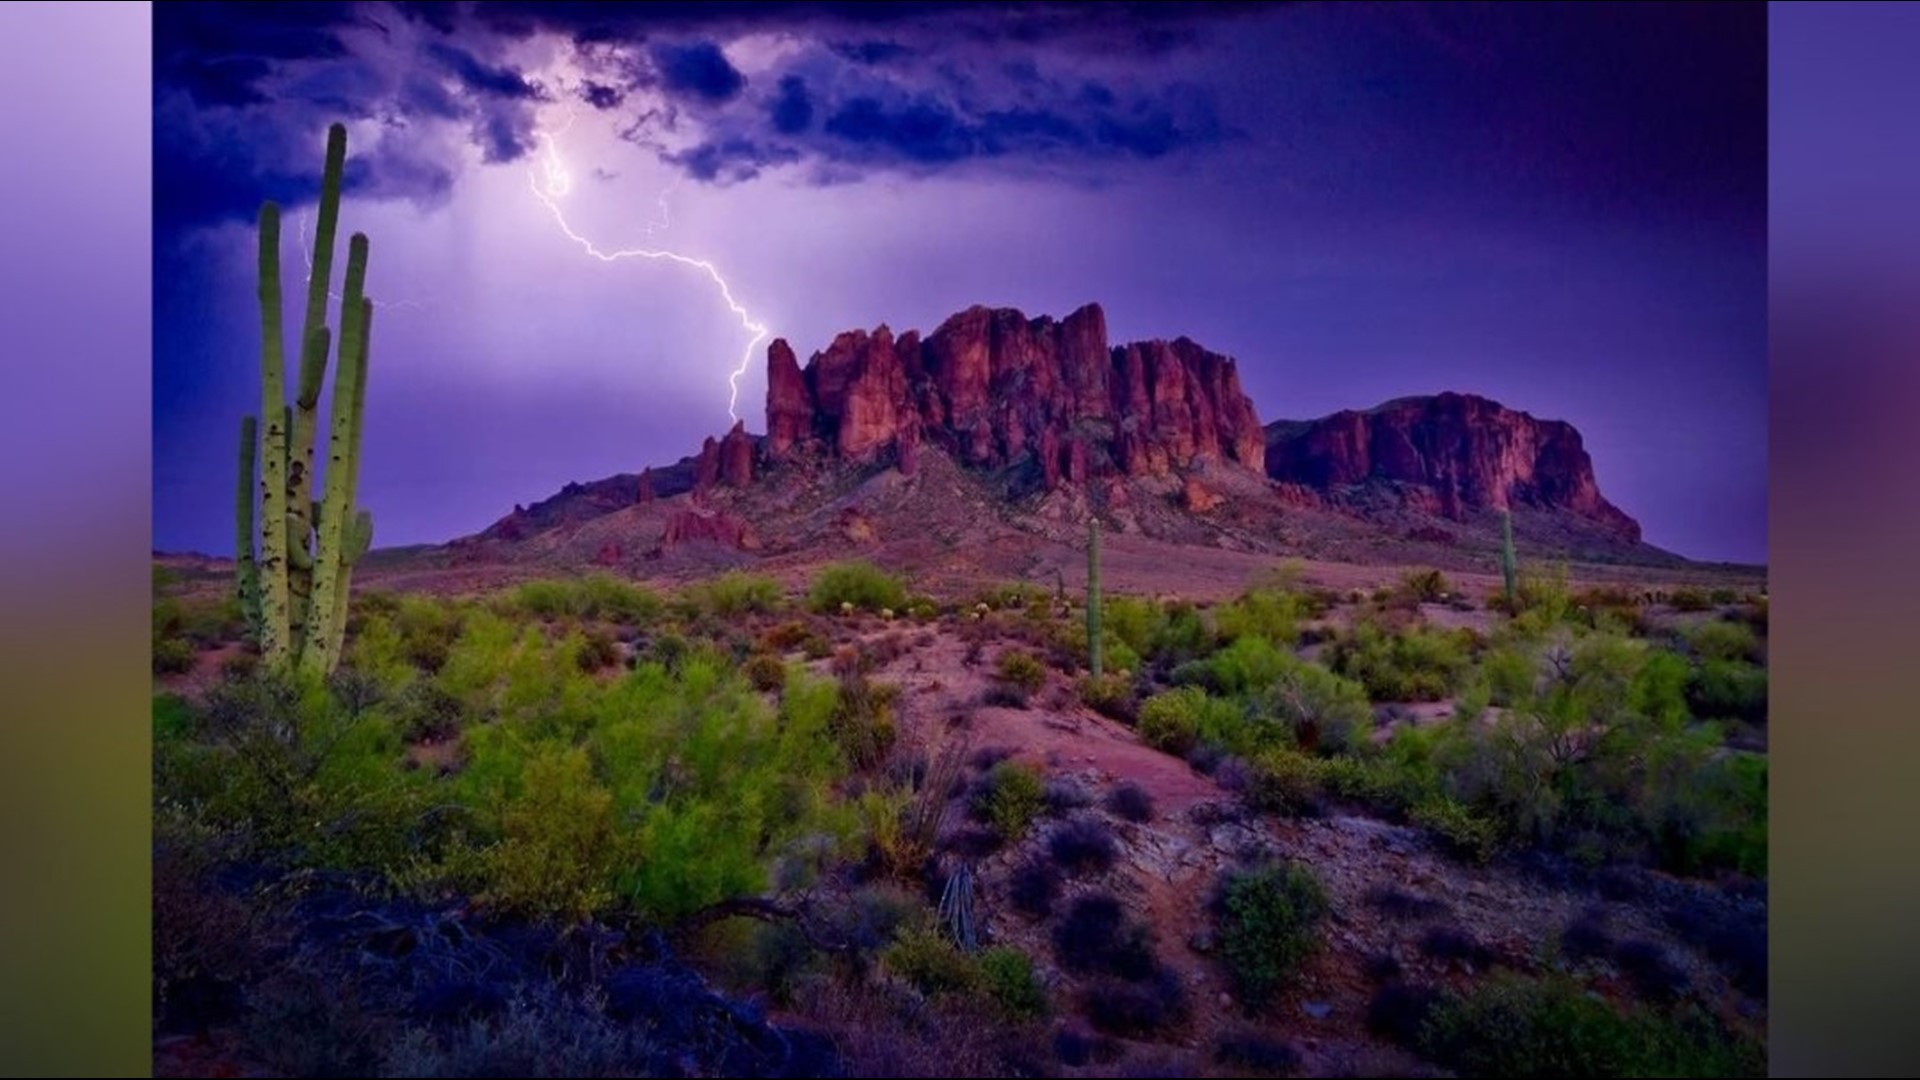 Monday's monsoon storm produced 35,000 lightning flashes across Arizona